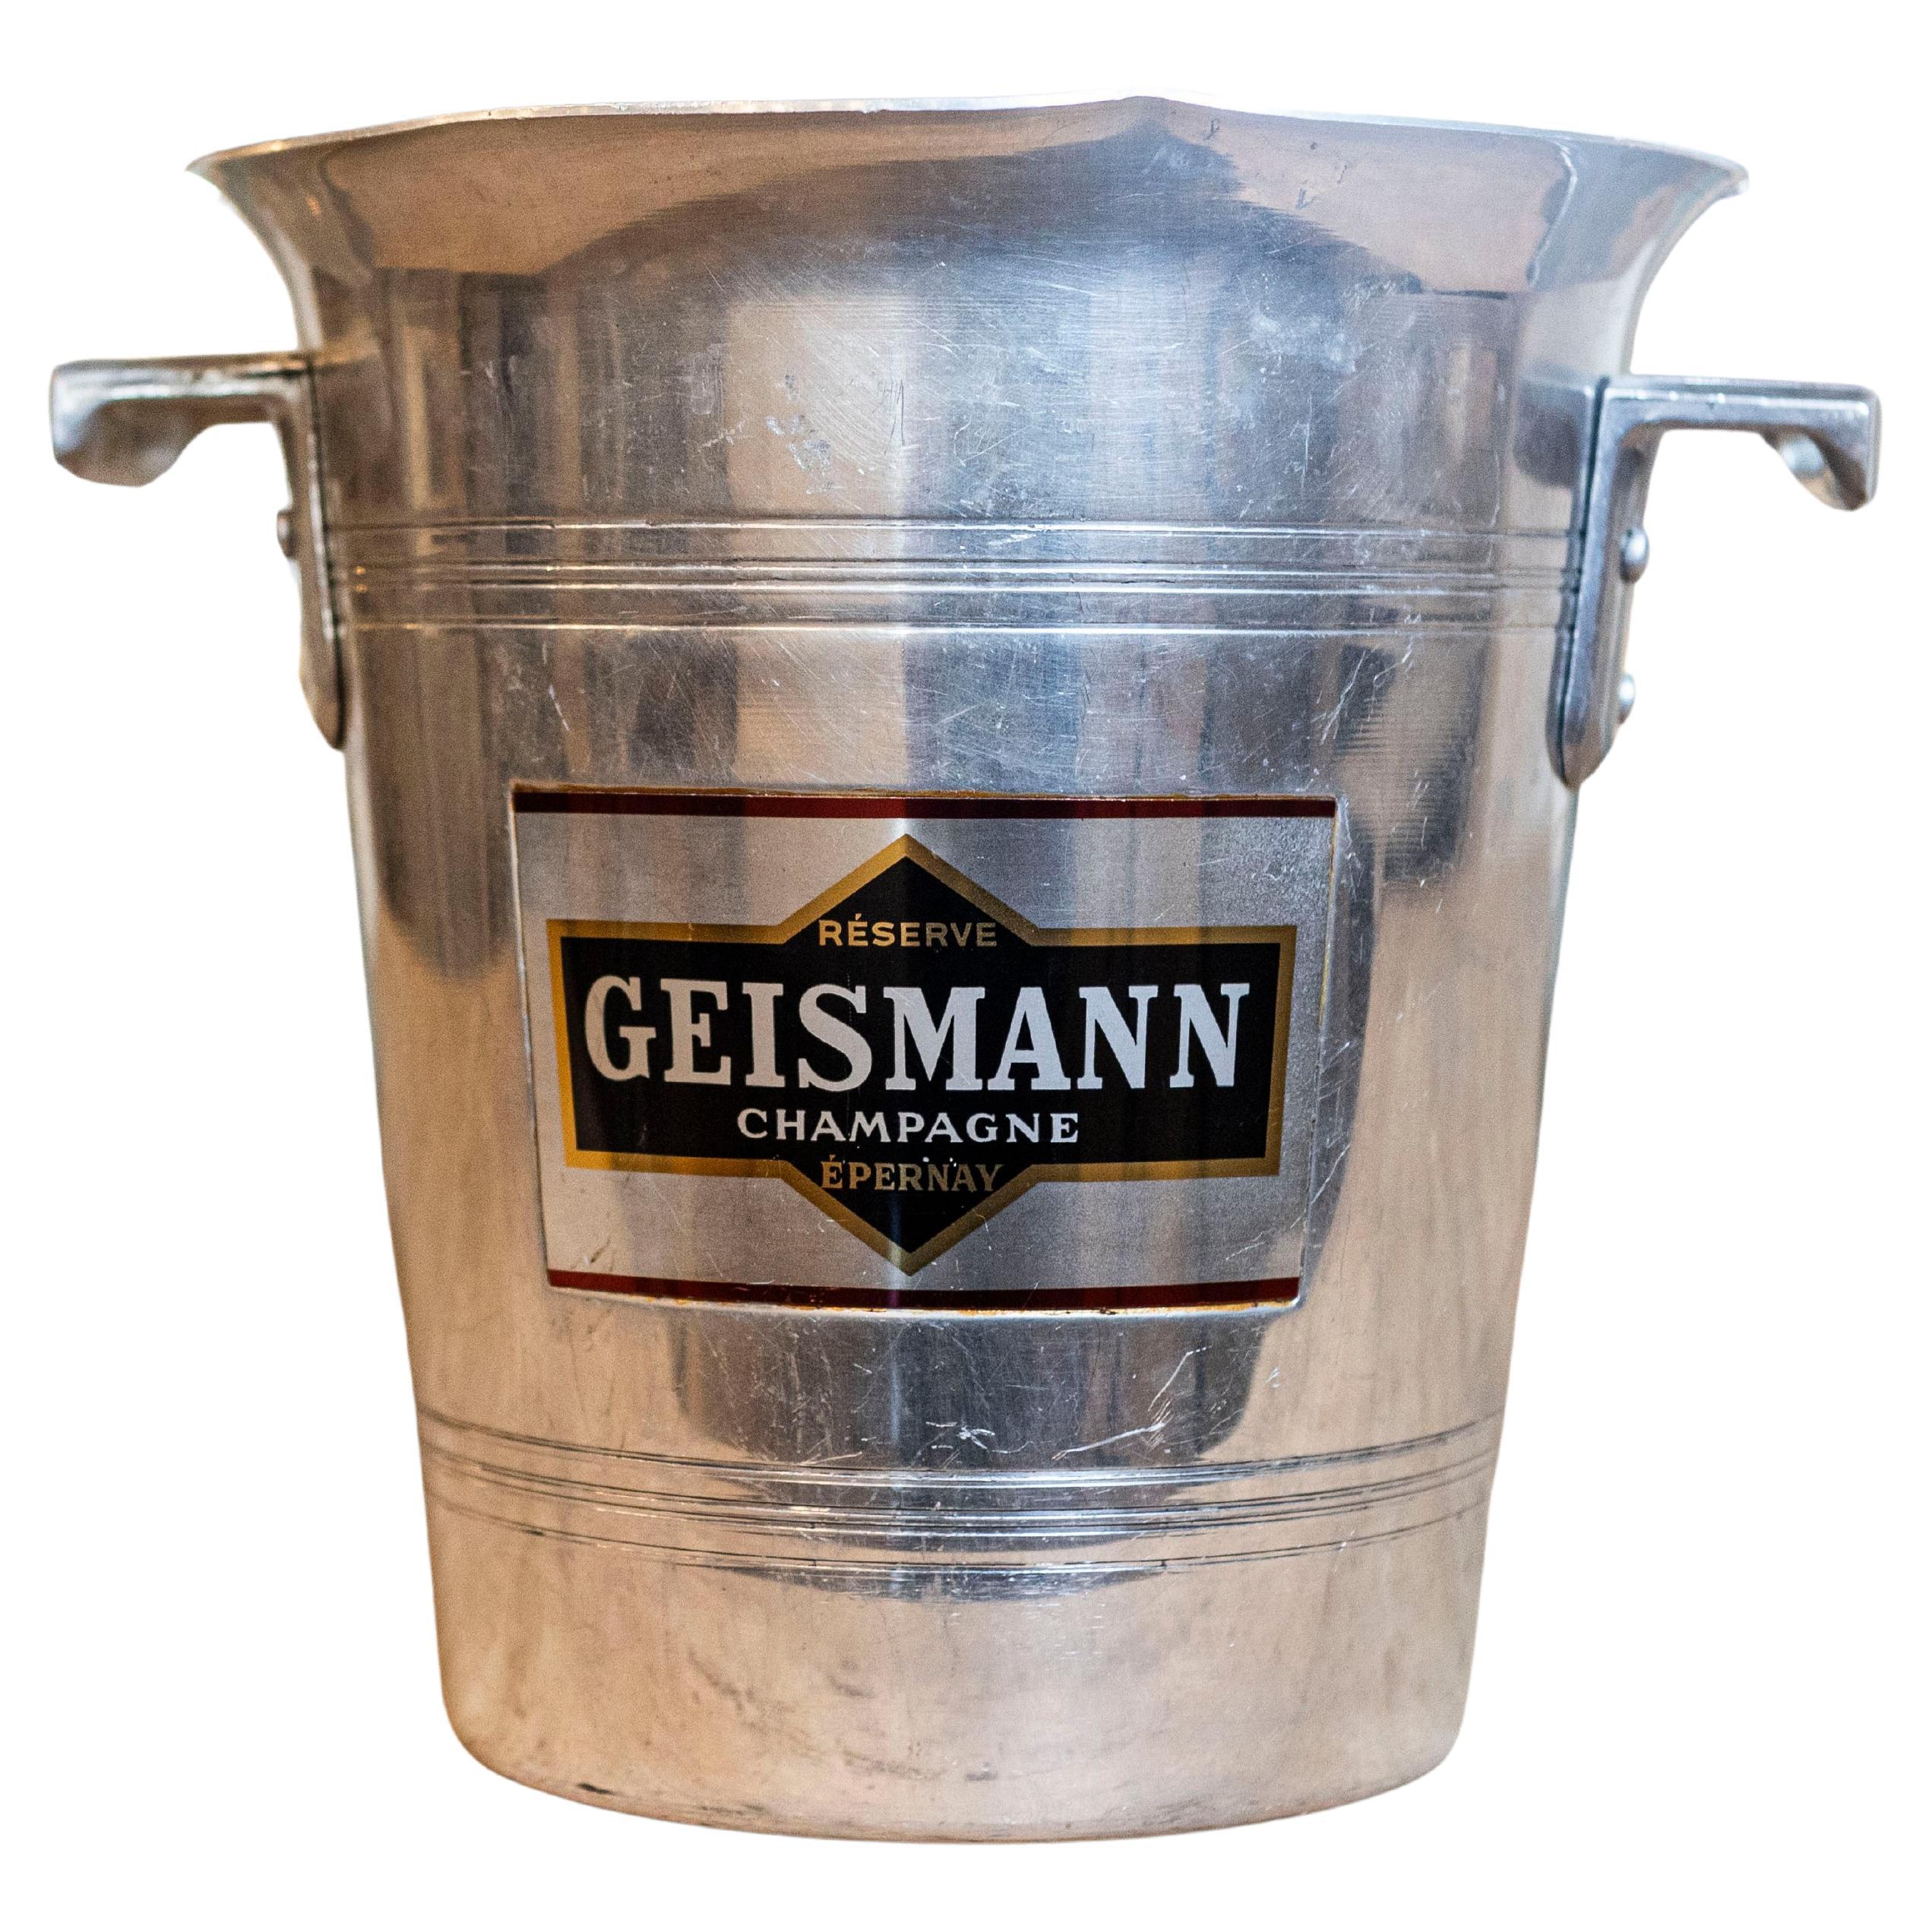 Seau à Champagne en aluminium du 19ème siècle avec Label Geismann Epernay